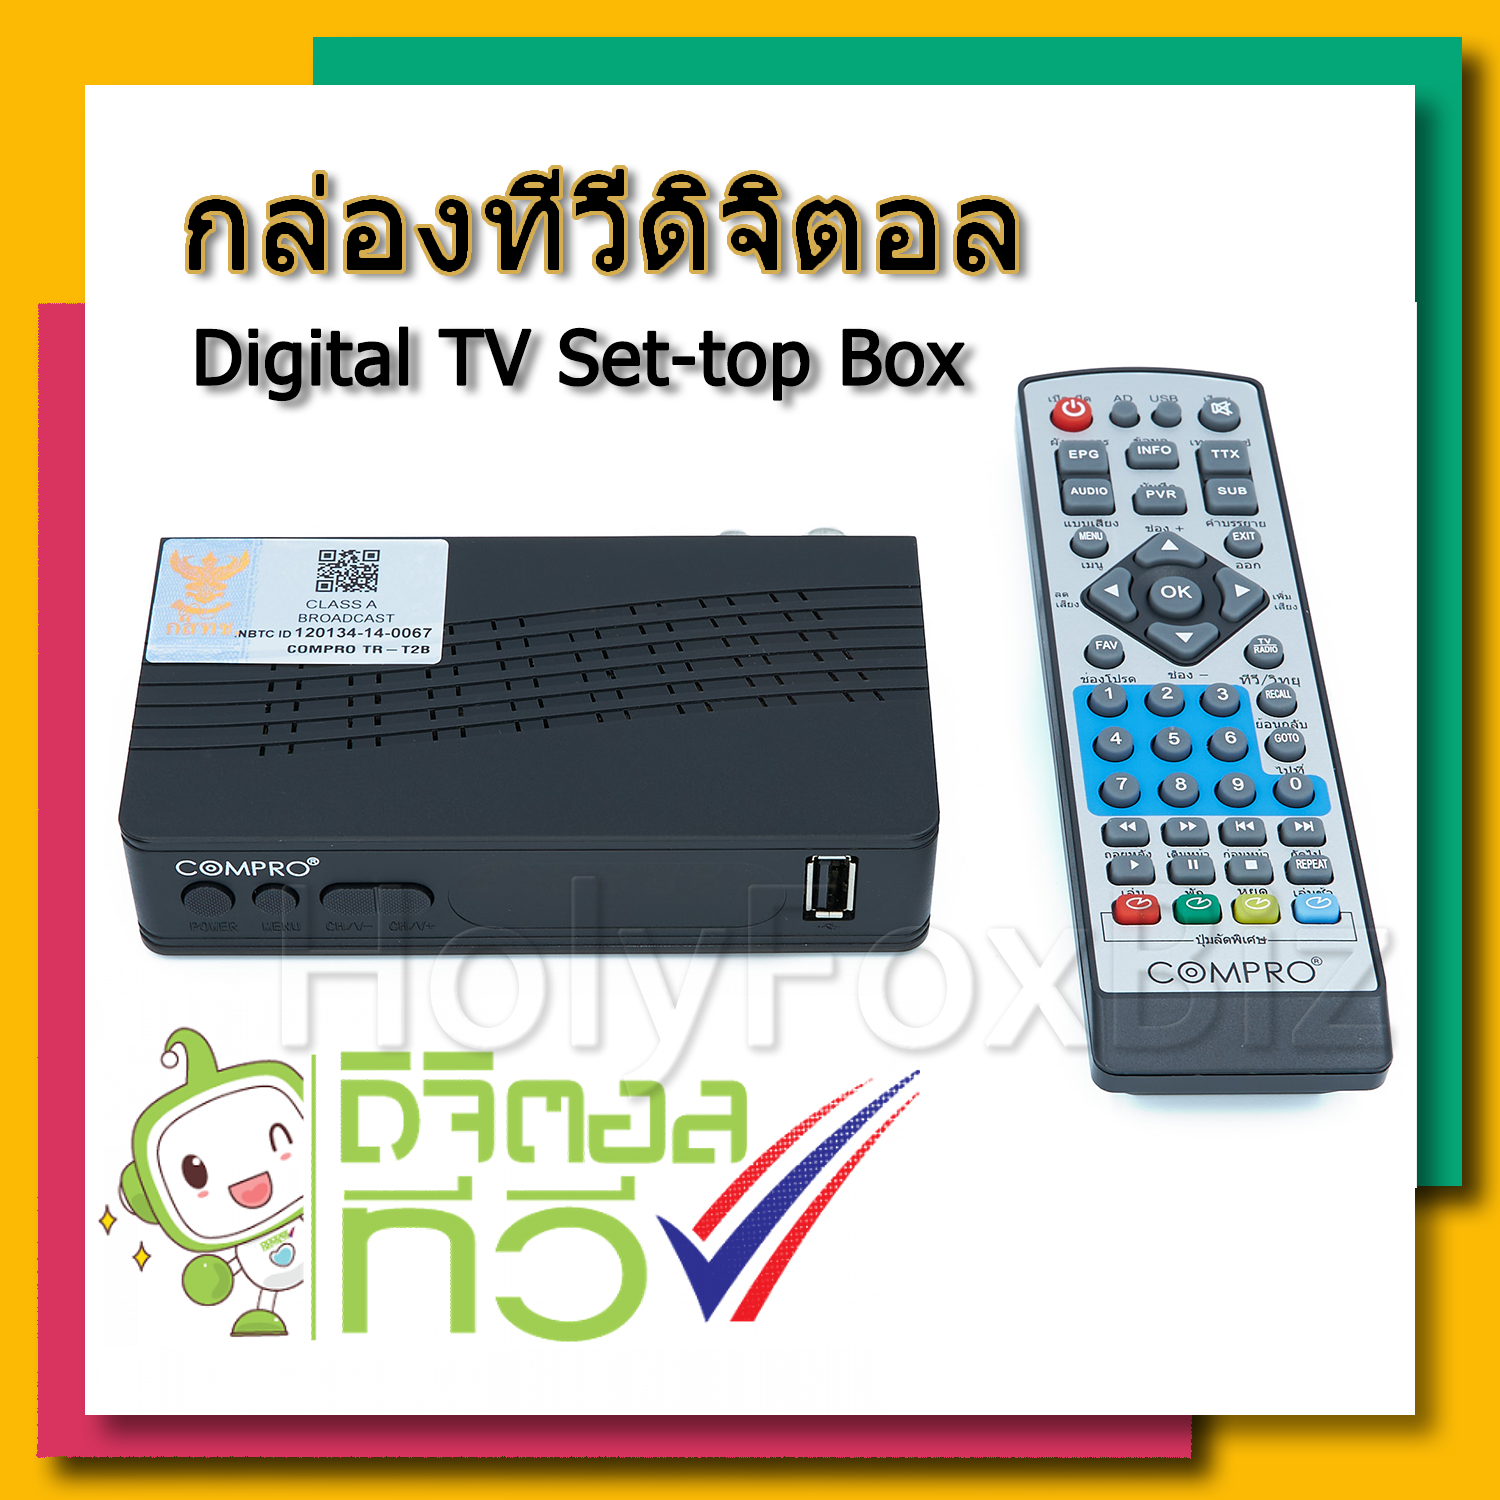 กล่องทีวีดิจิตอล COMPRO TR-T2B ของแท้ คุณภาพดี ราคาถูก Digital TV Box ดิจิตอลทีวี DIGITAL SET TOP BOX FULL HD 1080